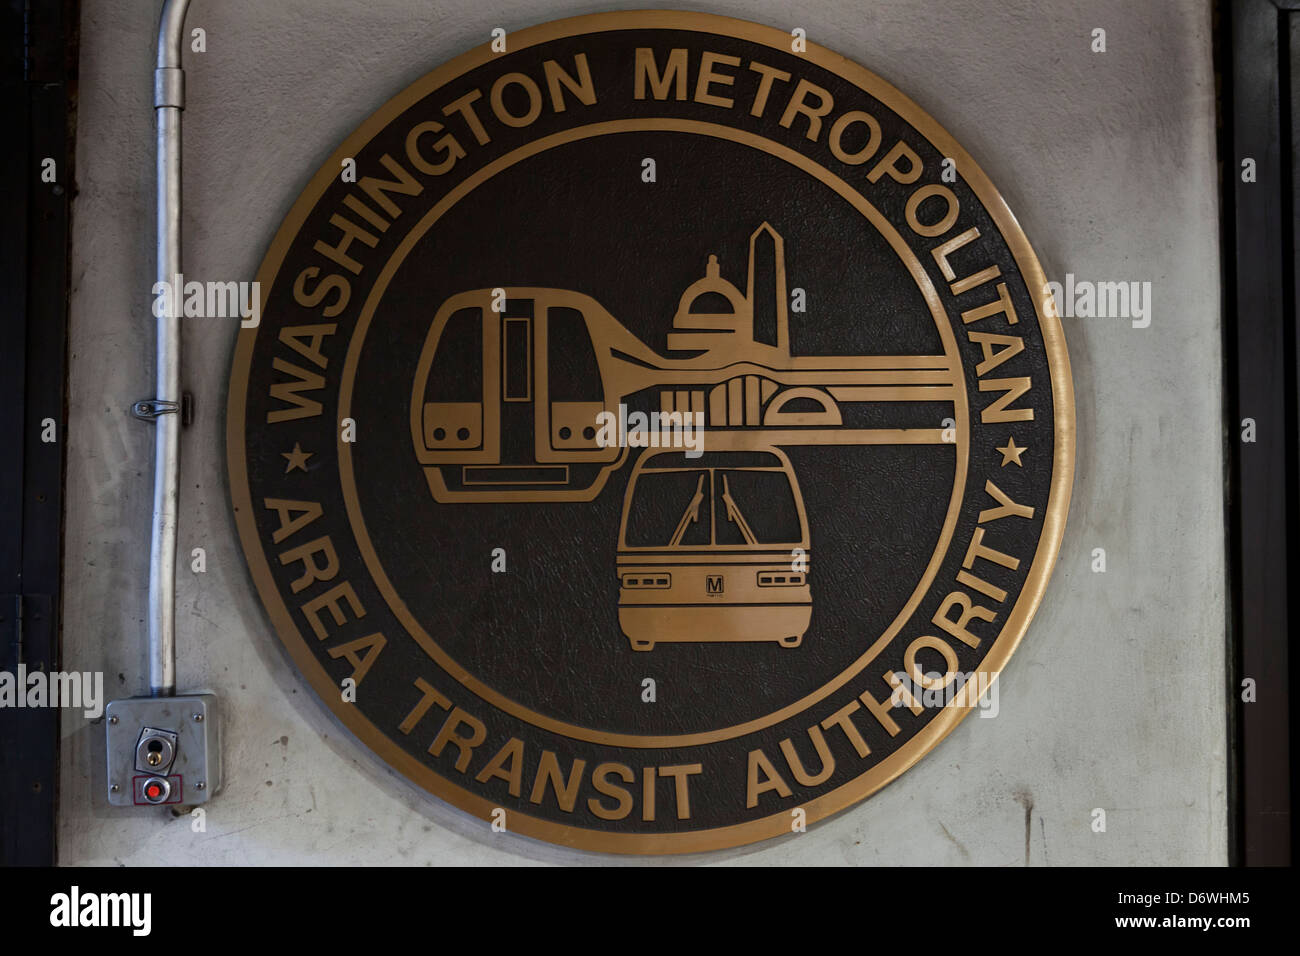 Washington Metropolitan Area Transit Authority seal Banque D'Images